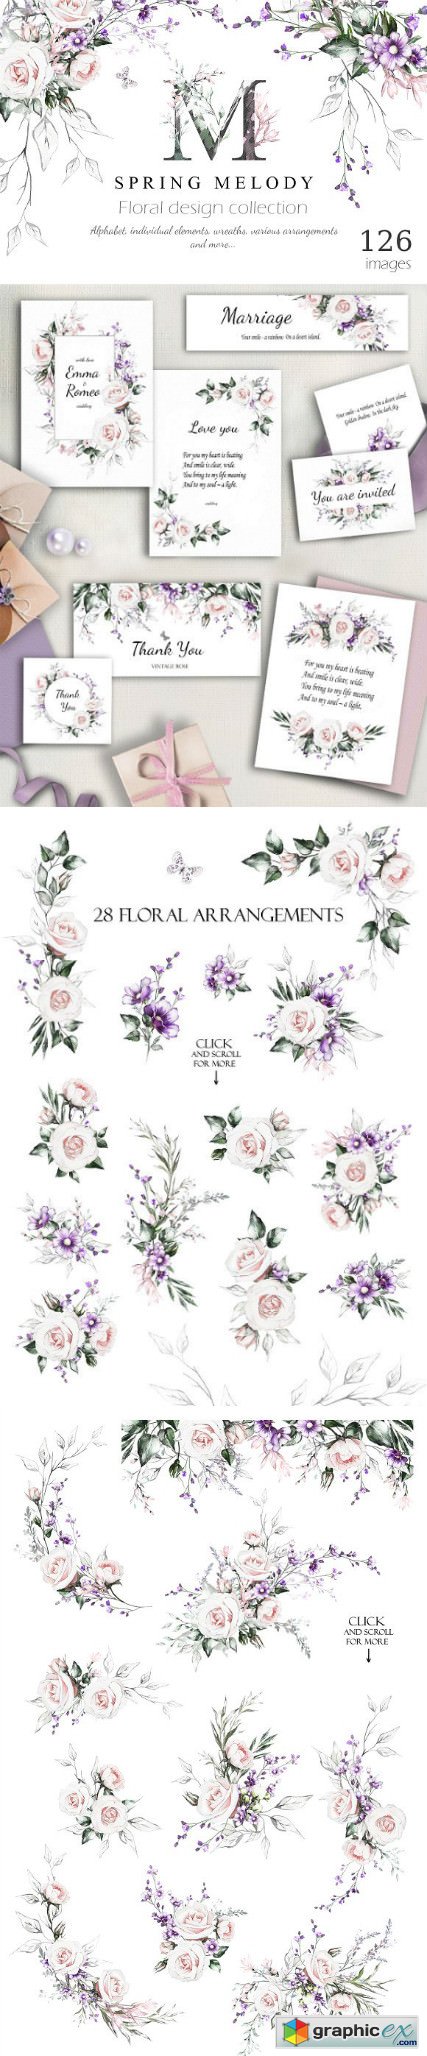 Spring Melody Floral Design bundle